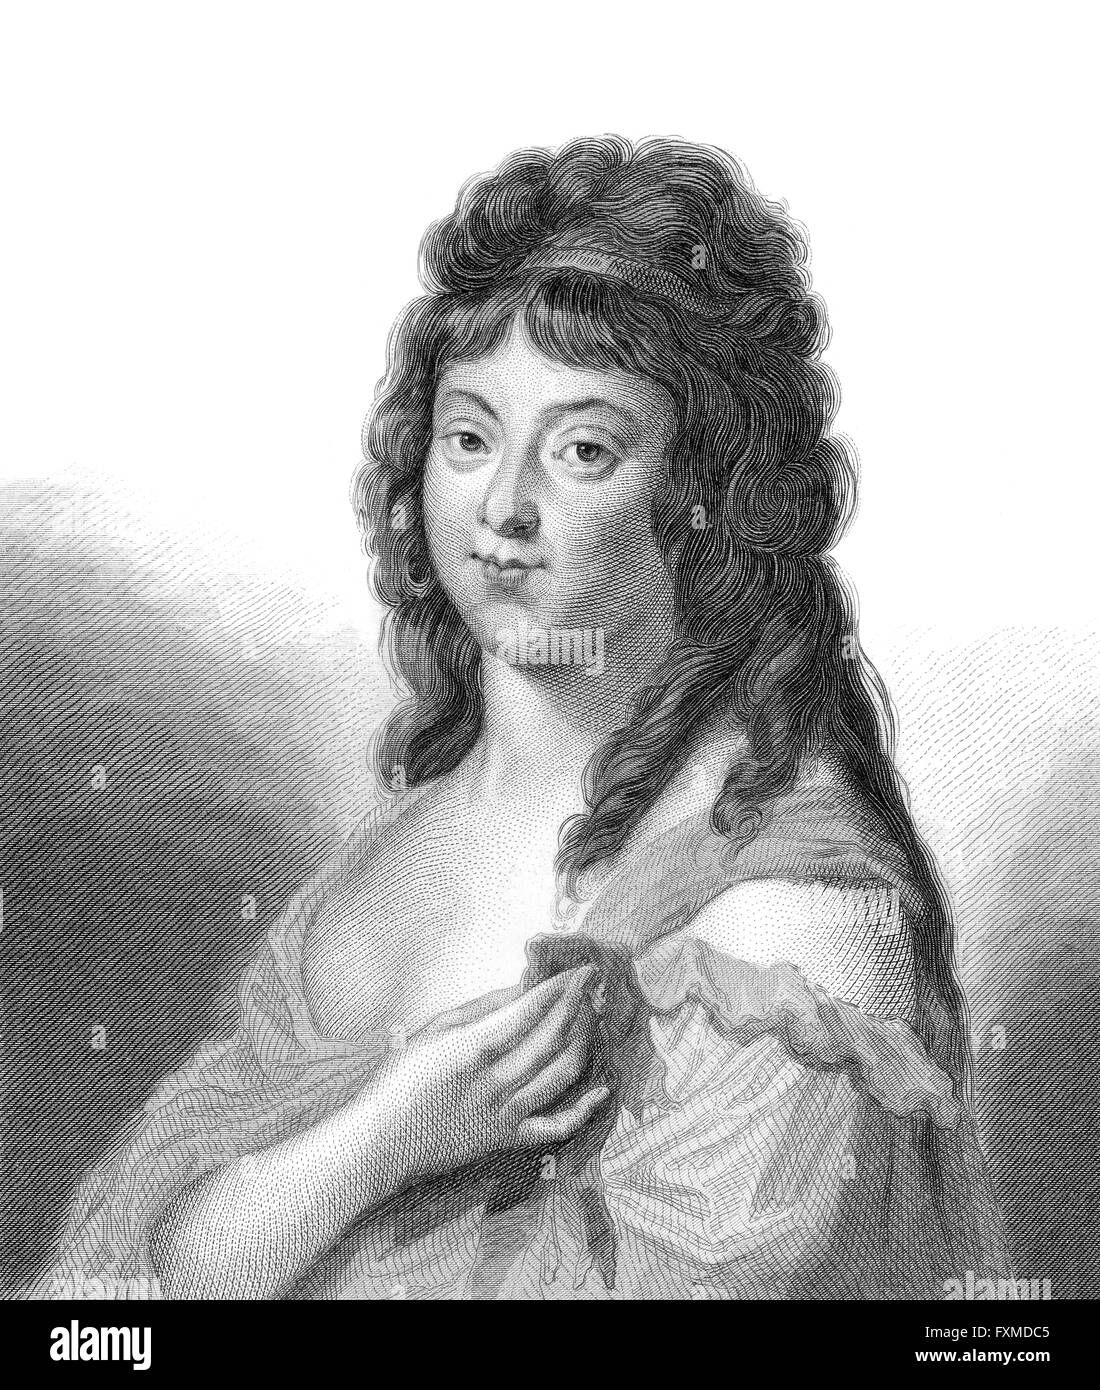 Madame Roland ou Joseph Phlippon Roland, 1754 - 1793, un partisan de la Révolution française et membre de l'aec Girondin Banque D'Images